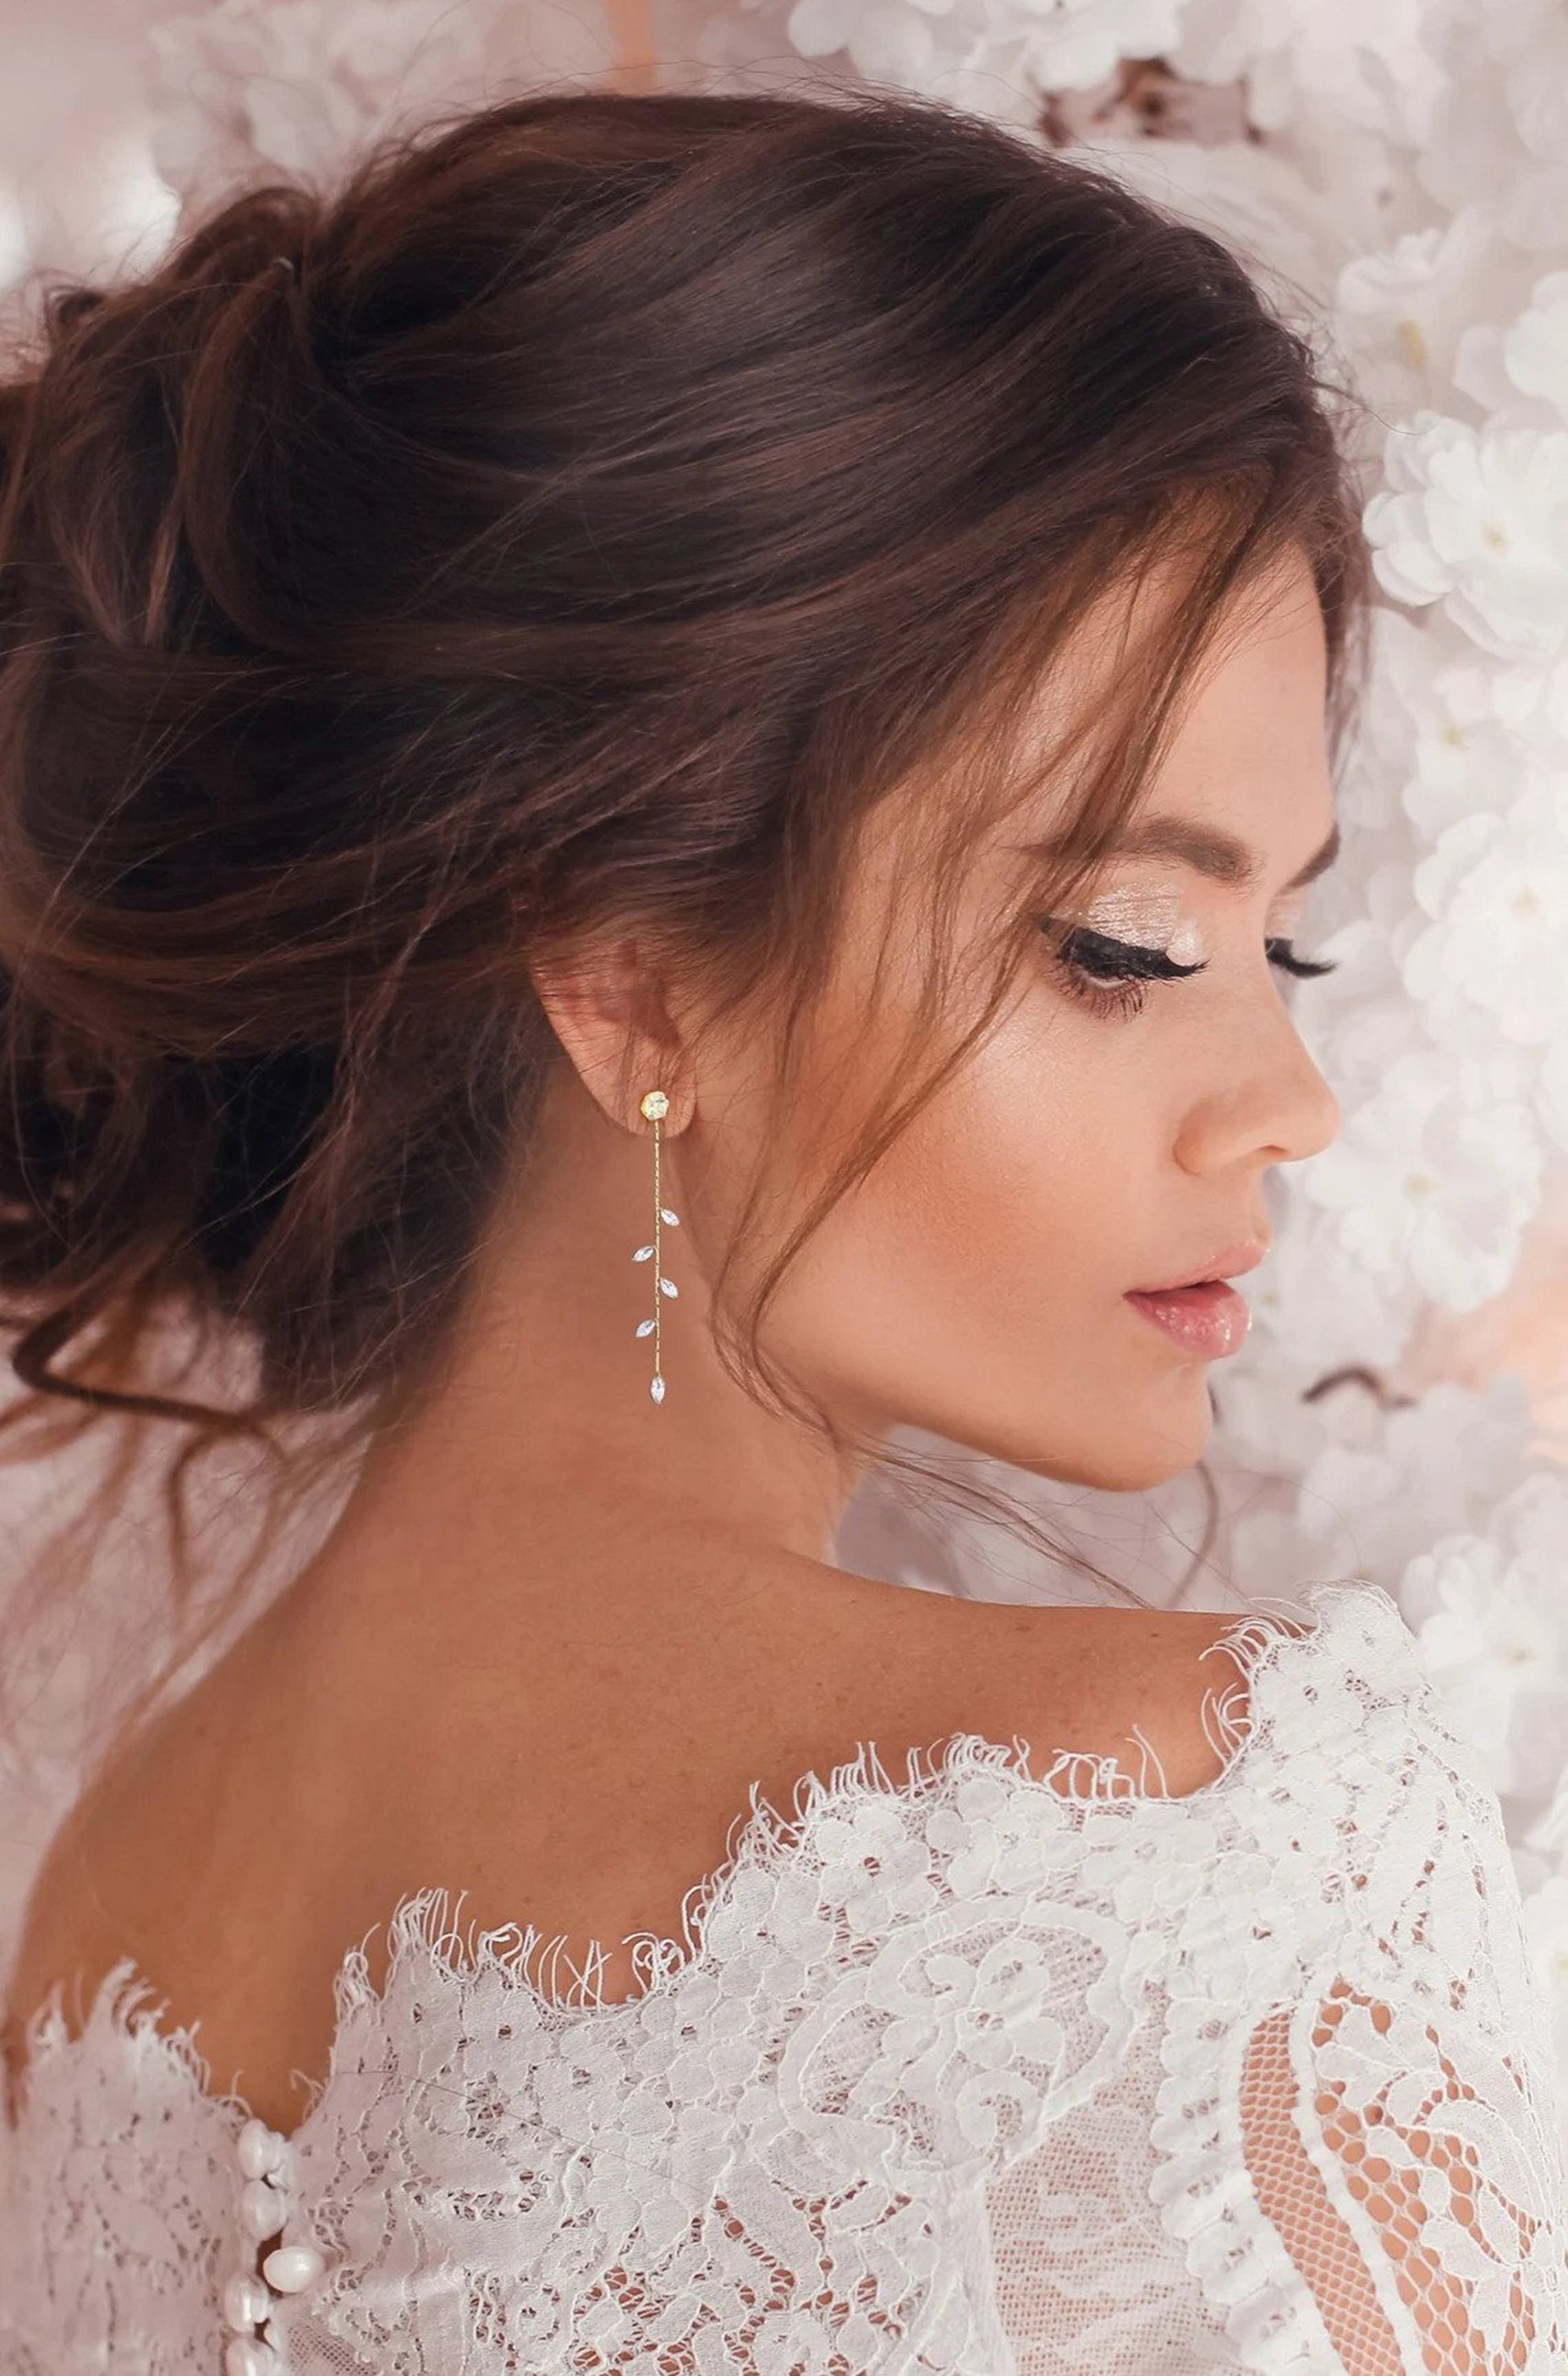 CZ Teardrop Bridal Earrings | Bridal Jewelry | Wedding Earrings